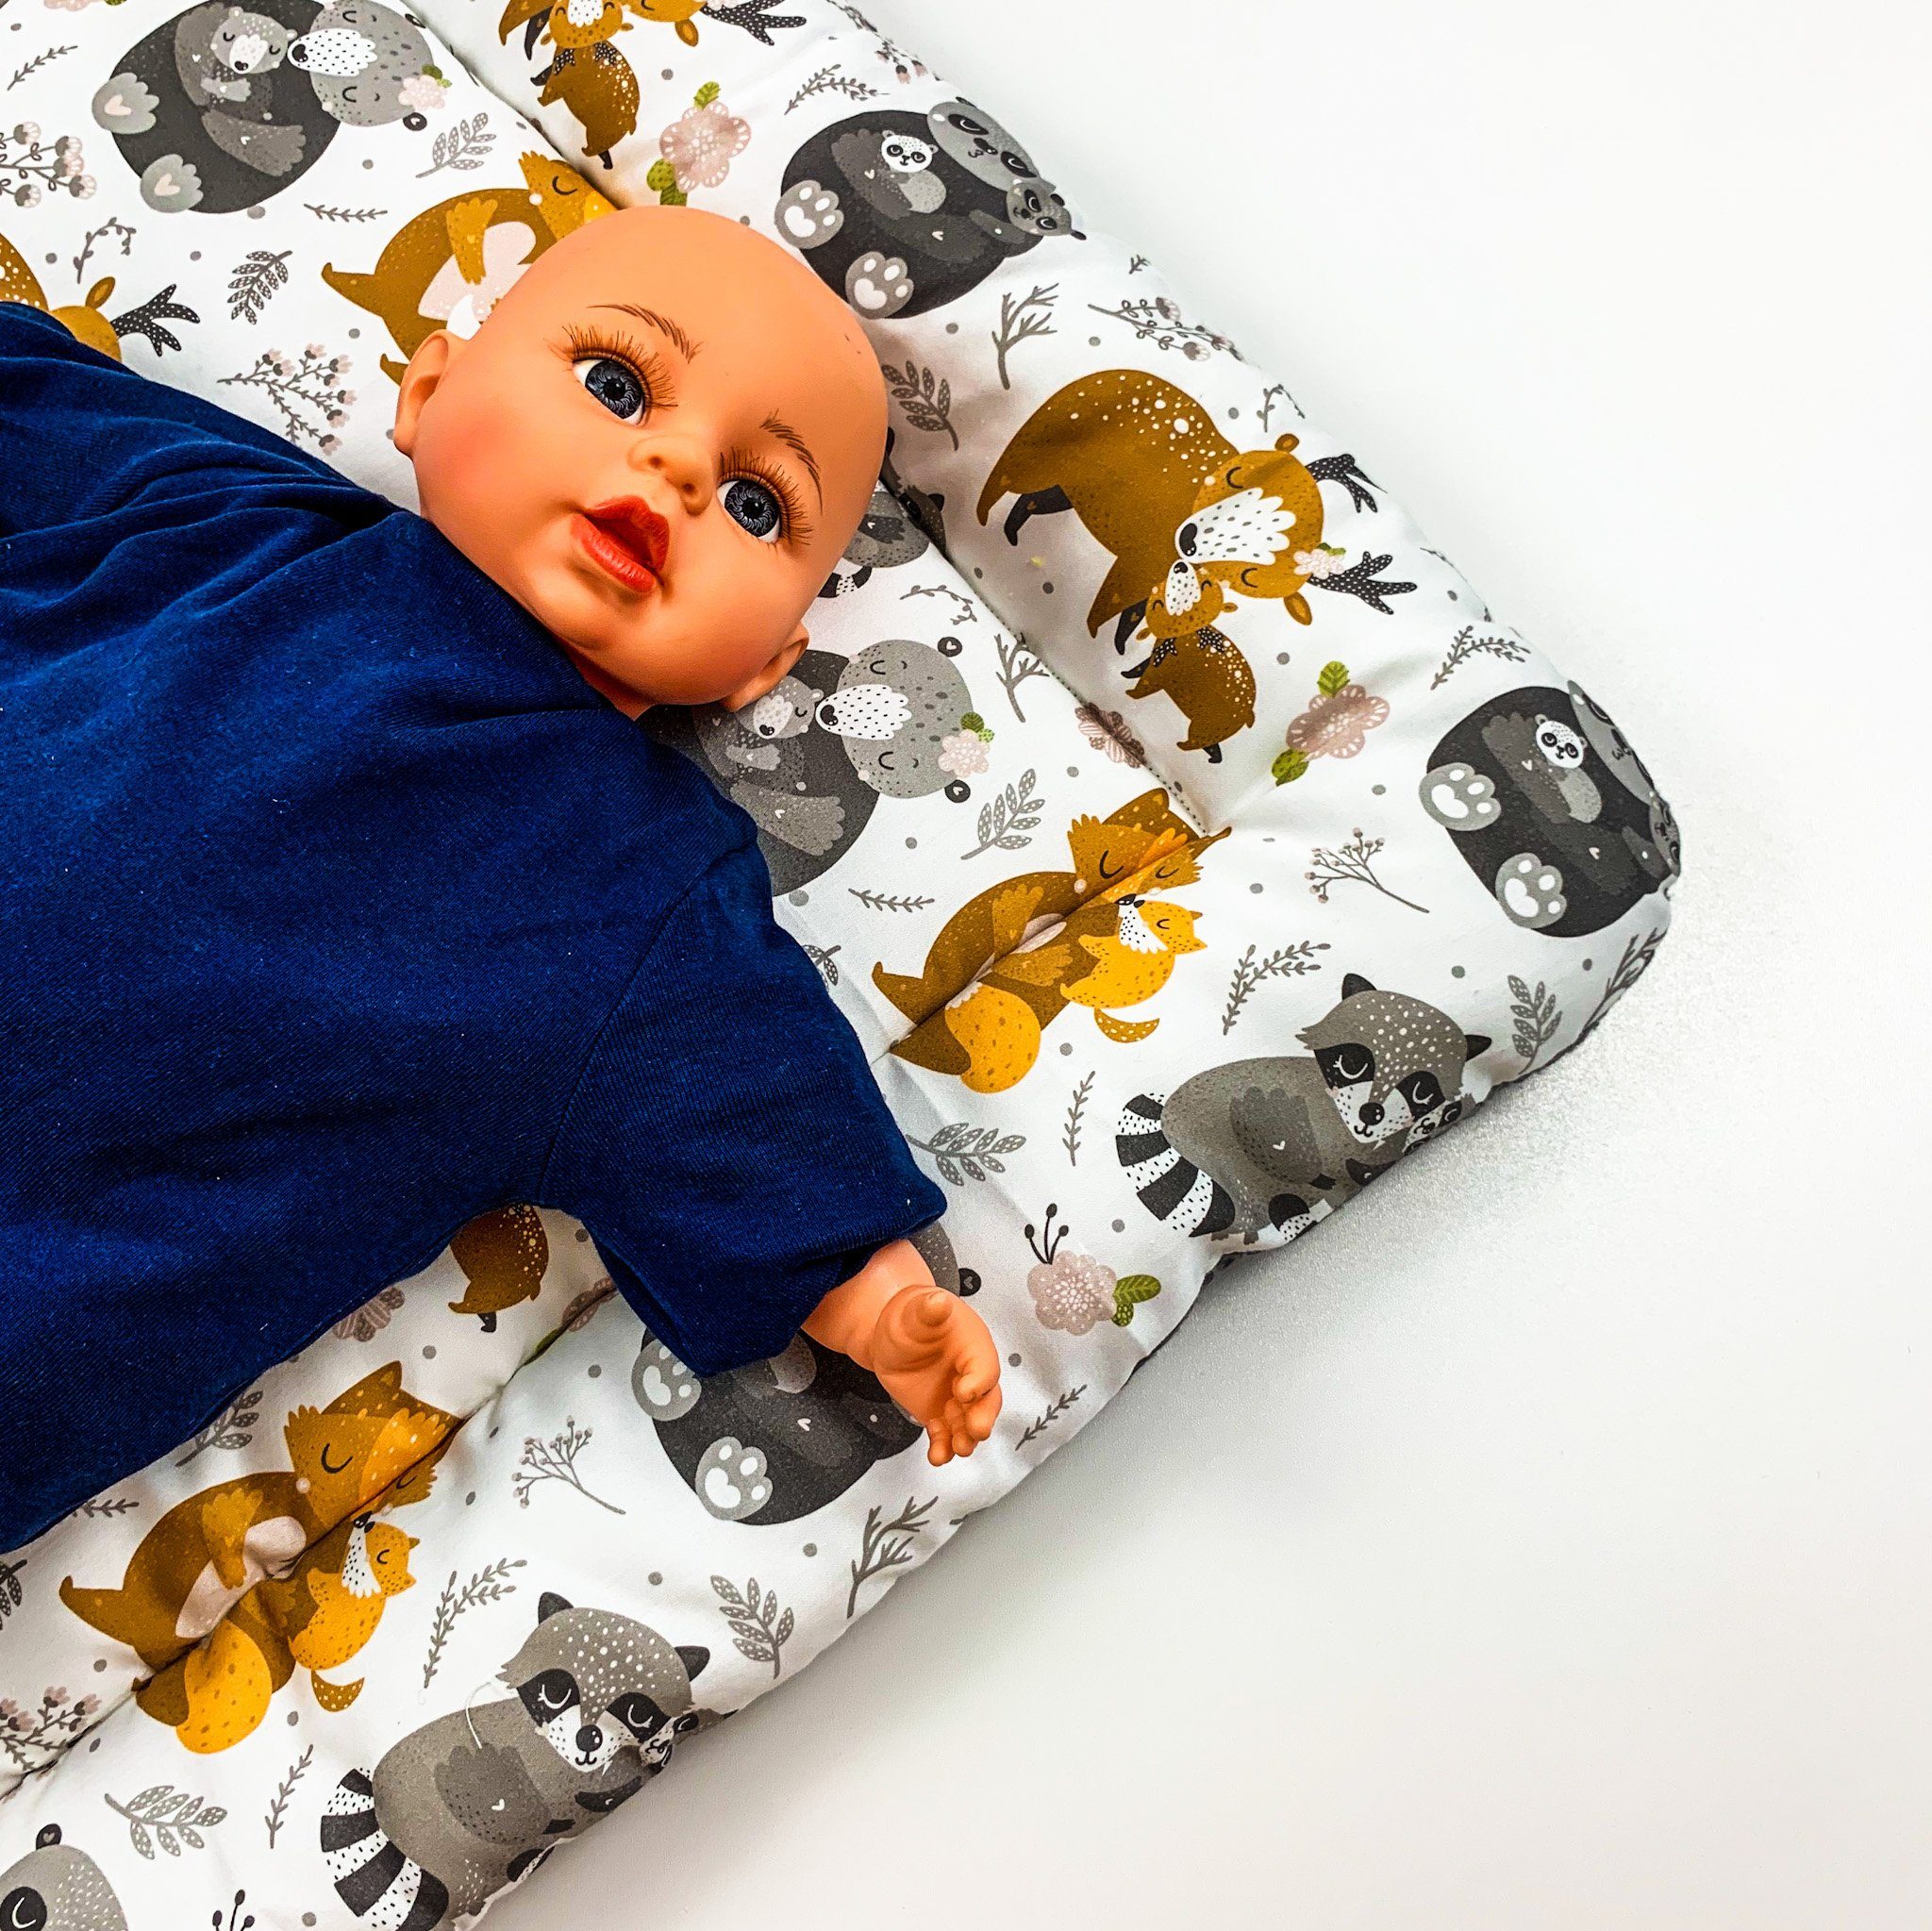 BABEES Wickelauflage Wickelunterlage für Ikea 75x75 70x50cm 100% Baumwolle  Baby zweiseitig, Aus Baumwolle - weich und angenehm für die Haut Ihres Babys